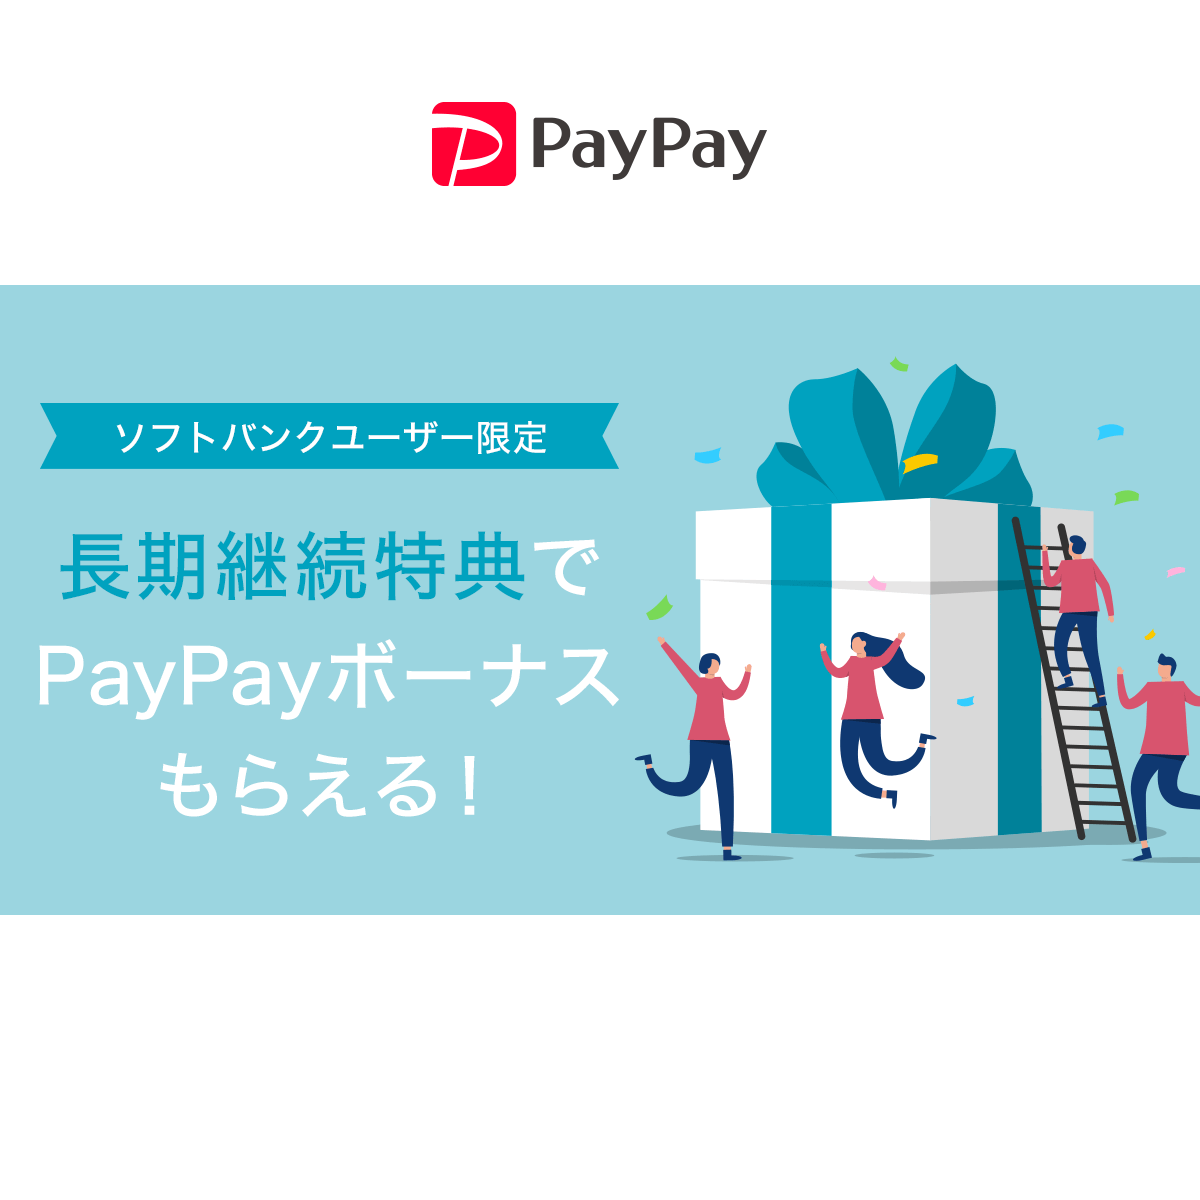 PayPay_長期継続特典でPayPayボーナスもらえる！_1200 x 1200のバナーデザイン